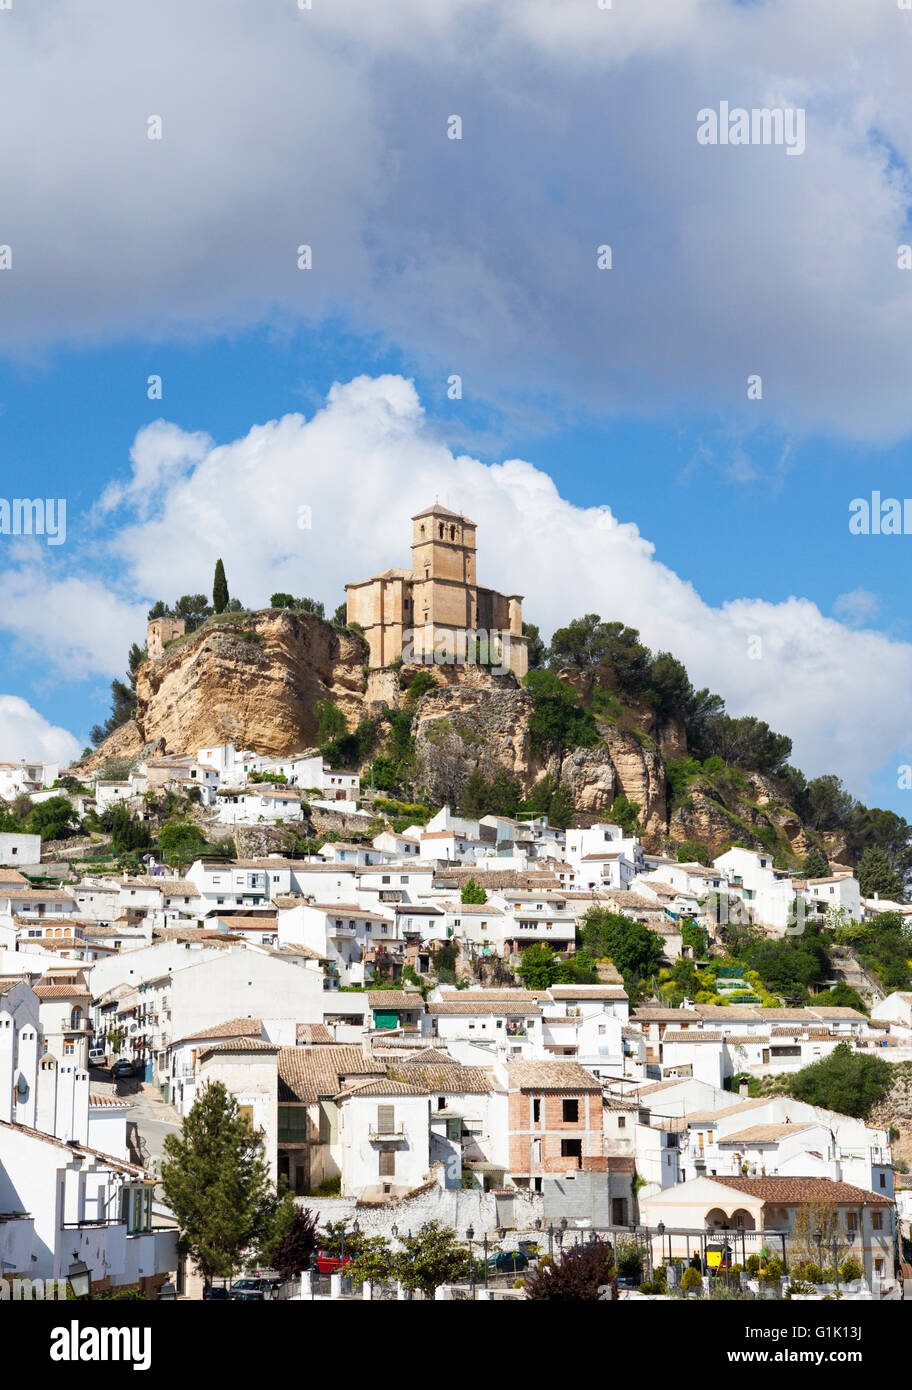 Villaggio di Montefrio, provincia di Granada, Spagna, con la sua chiesa sulle rovine di una fortezza moresca sulla collina Foto Stock